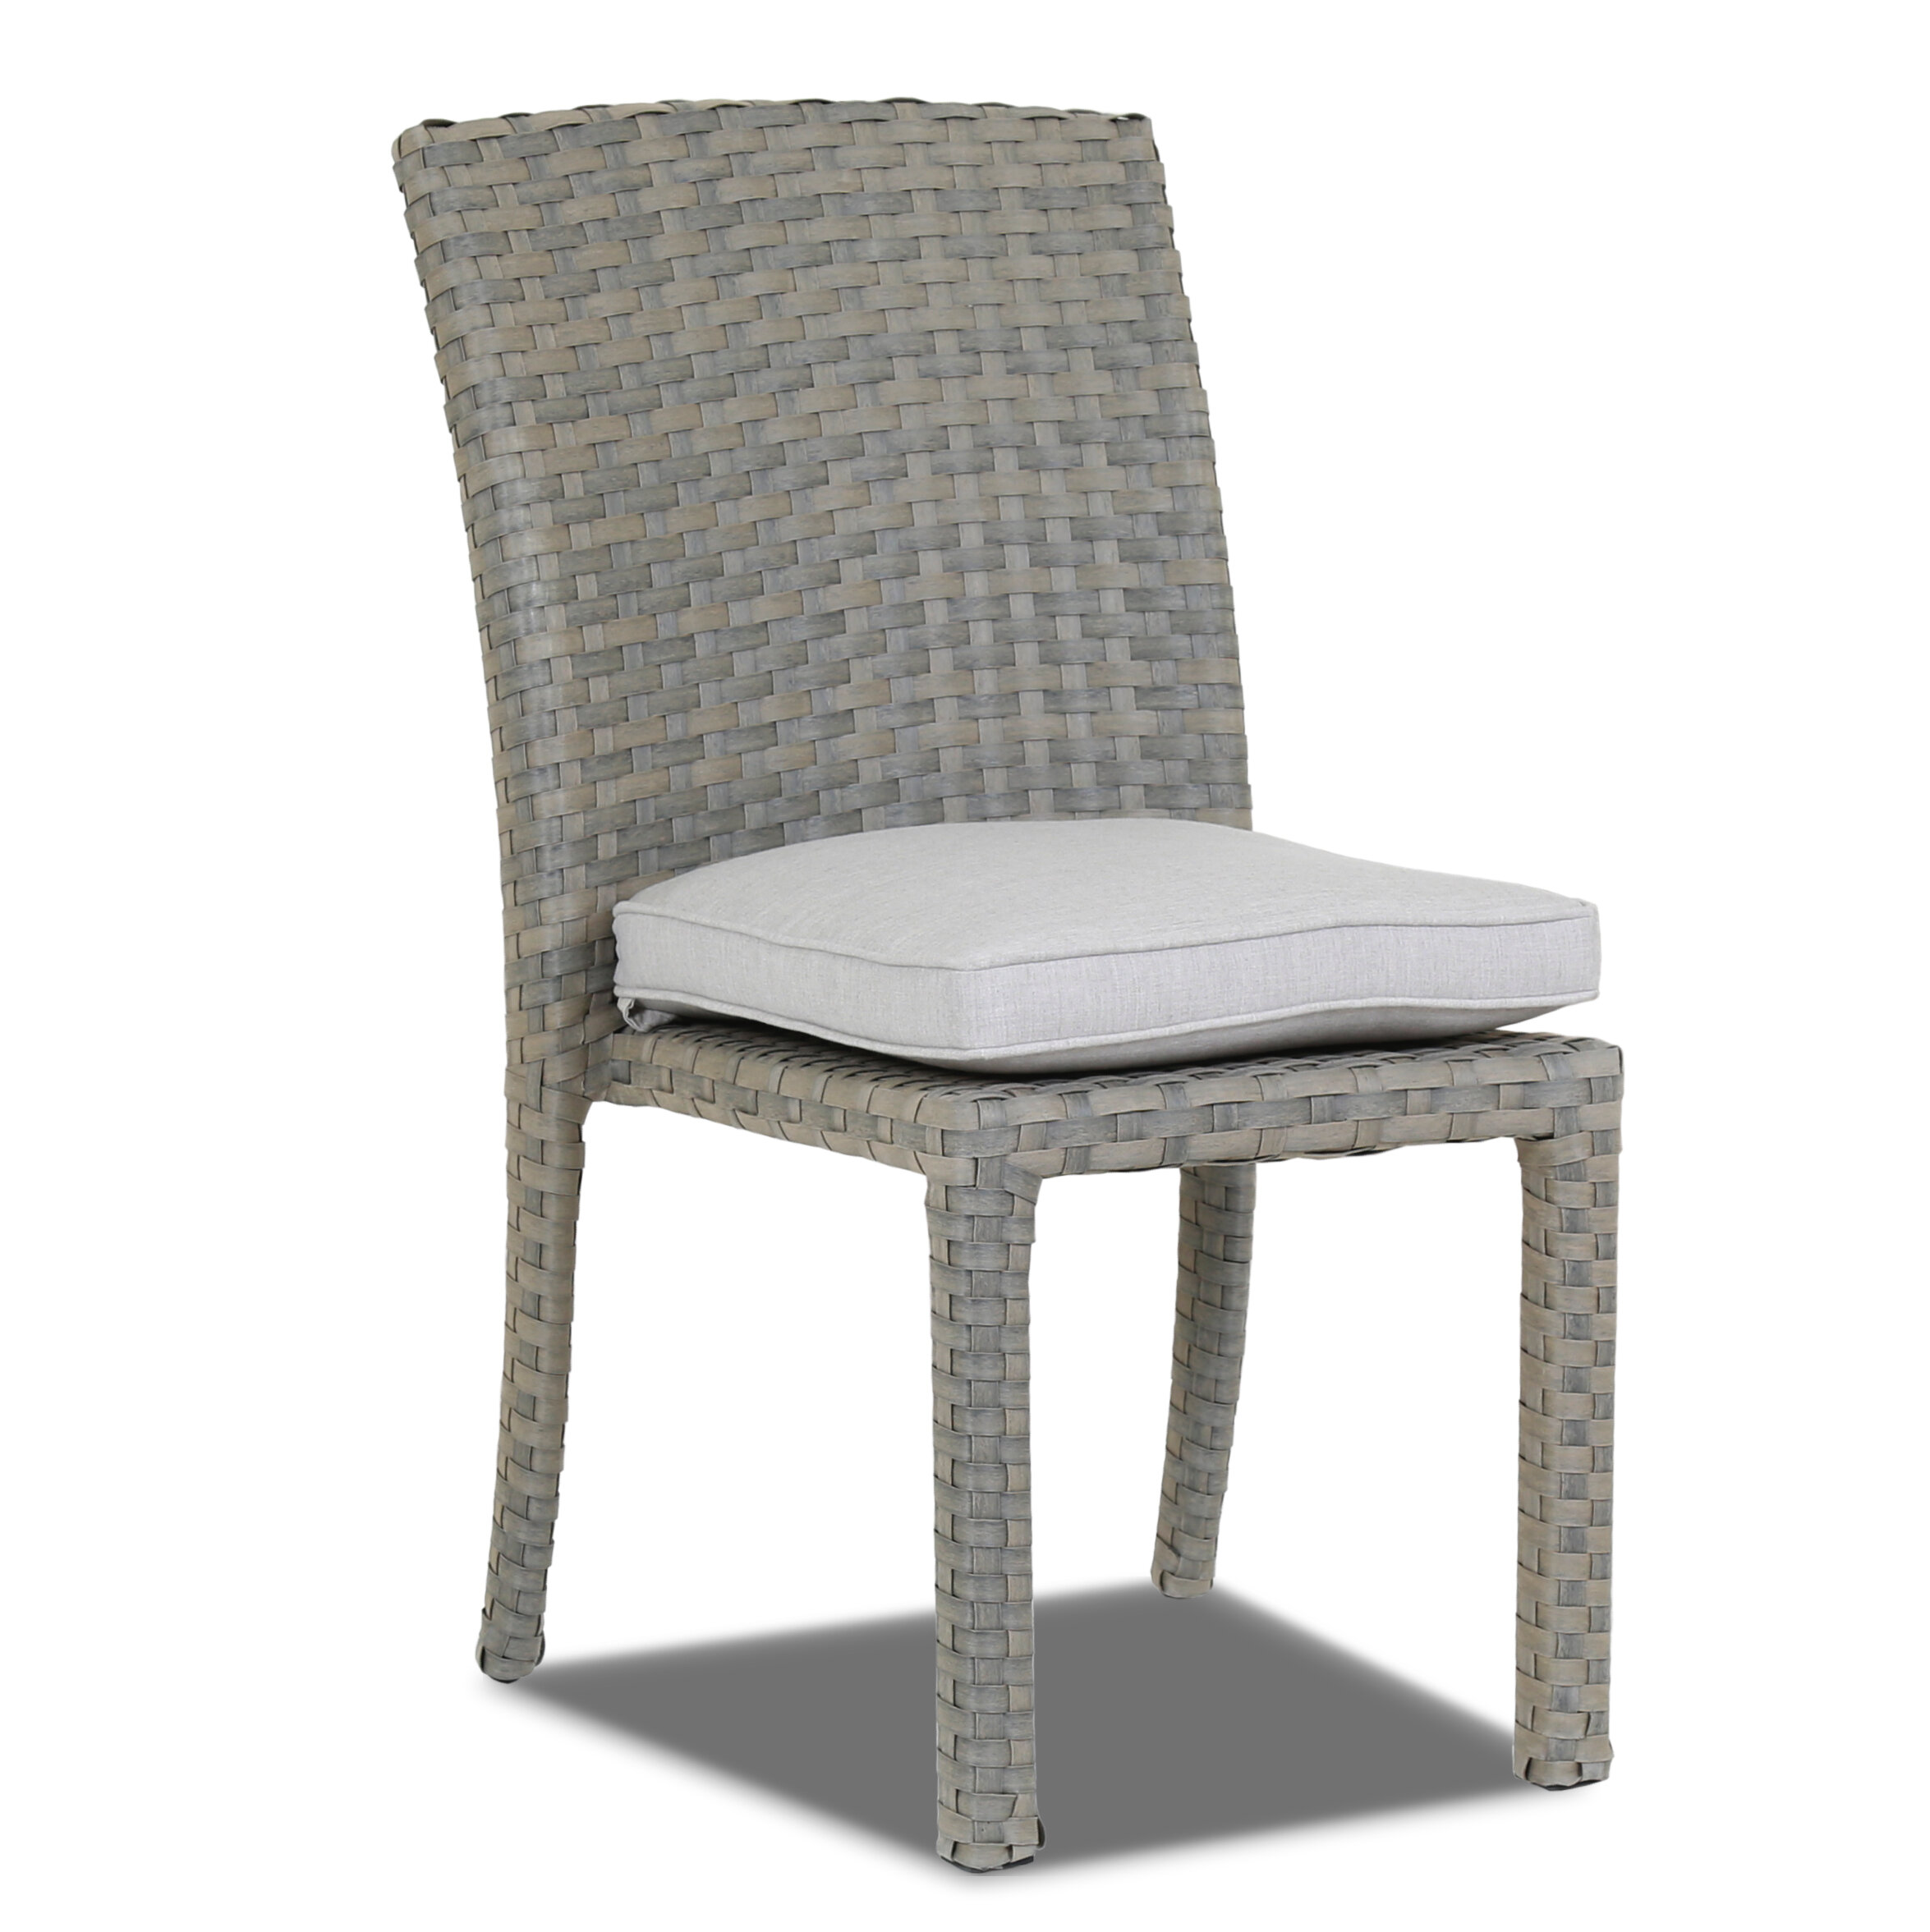 Sunset West Majorca Armless Patio Dining Chair With Cushion Wayfair